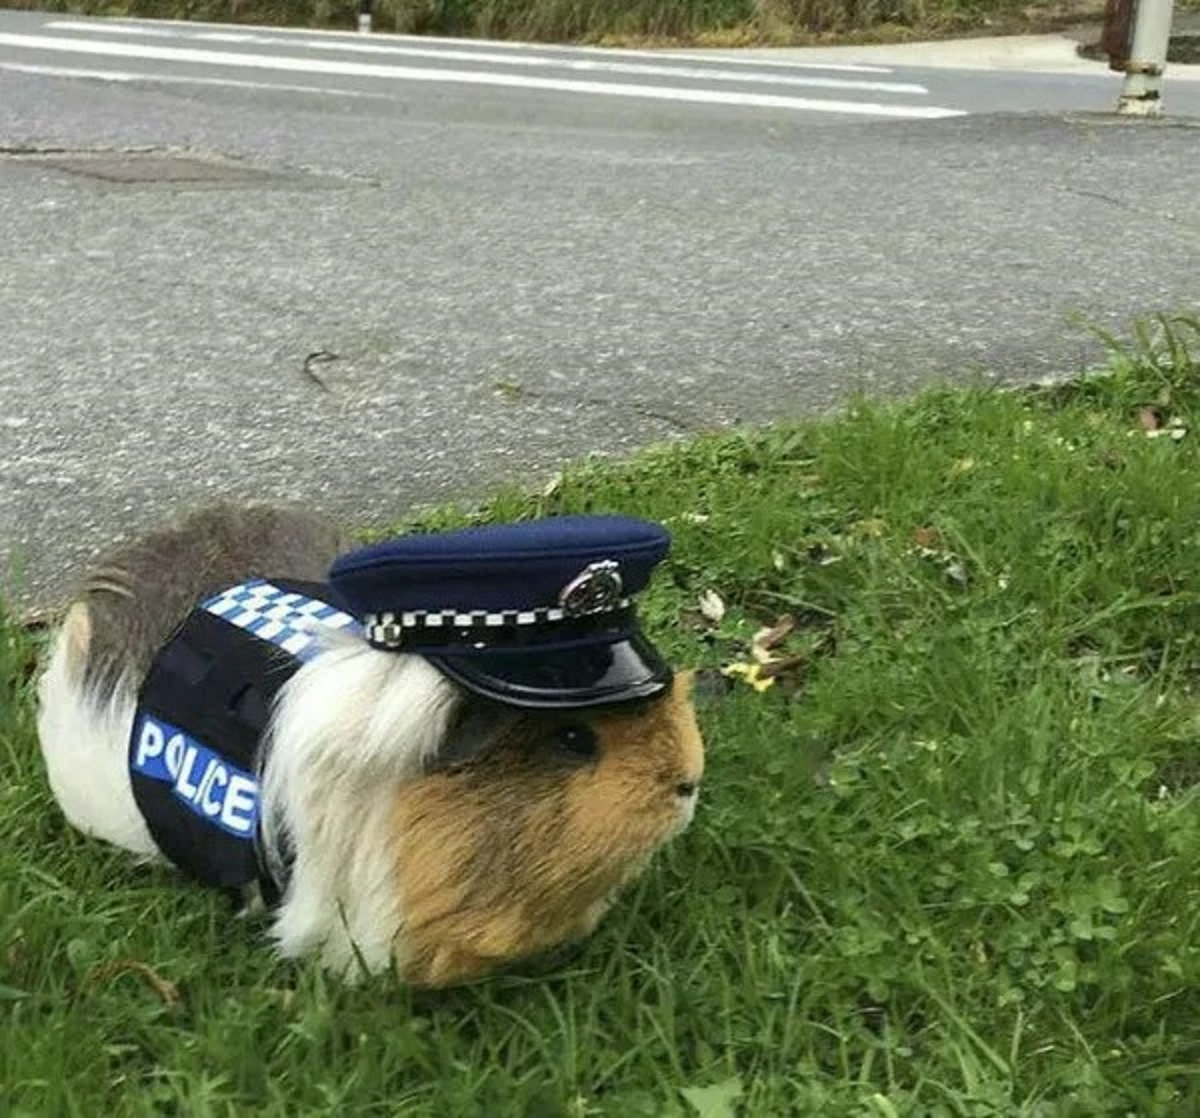 Guinea pig - Police